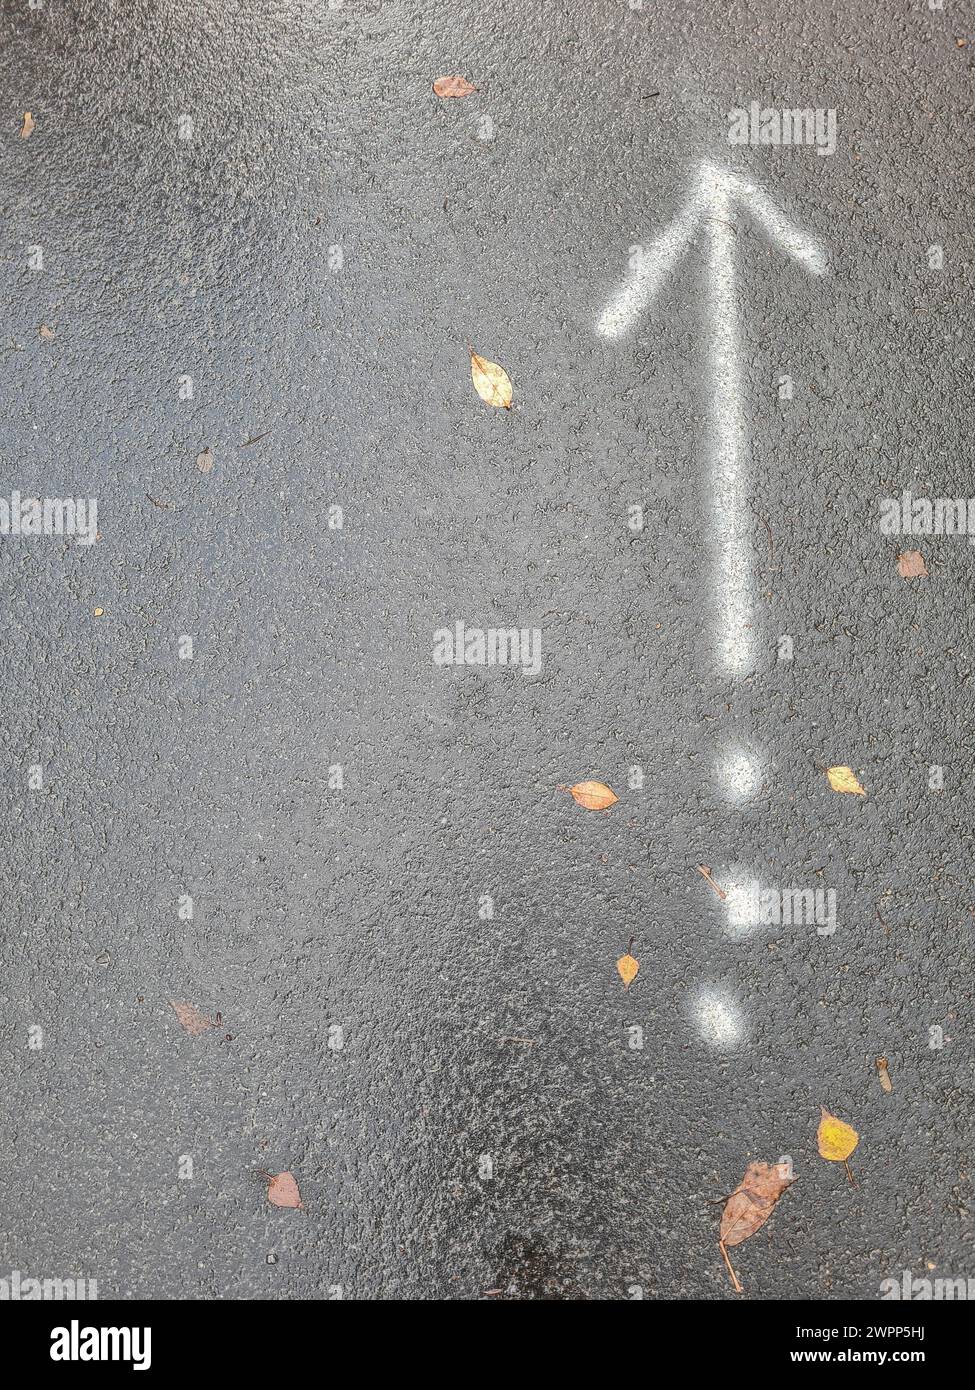 Weißer Pfeil nach oben und drei weiße Punkte auf grauem Asphaltgrund im Regen, regengetränkte Fahrbahn mit Schild, Deutschland Stockfoto